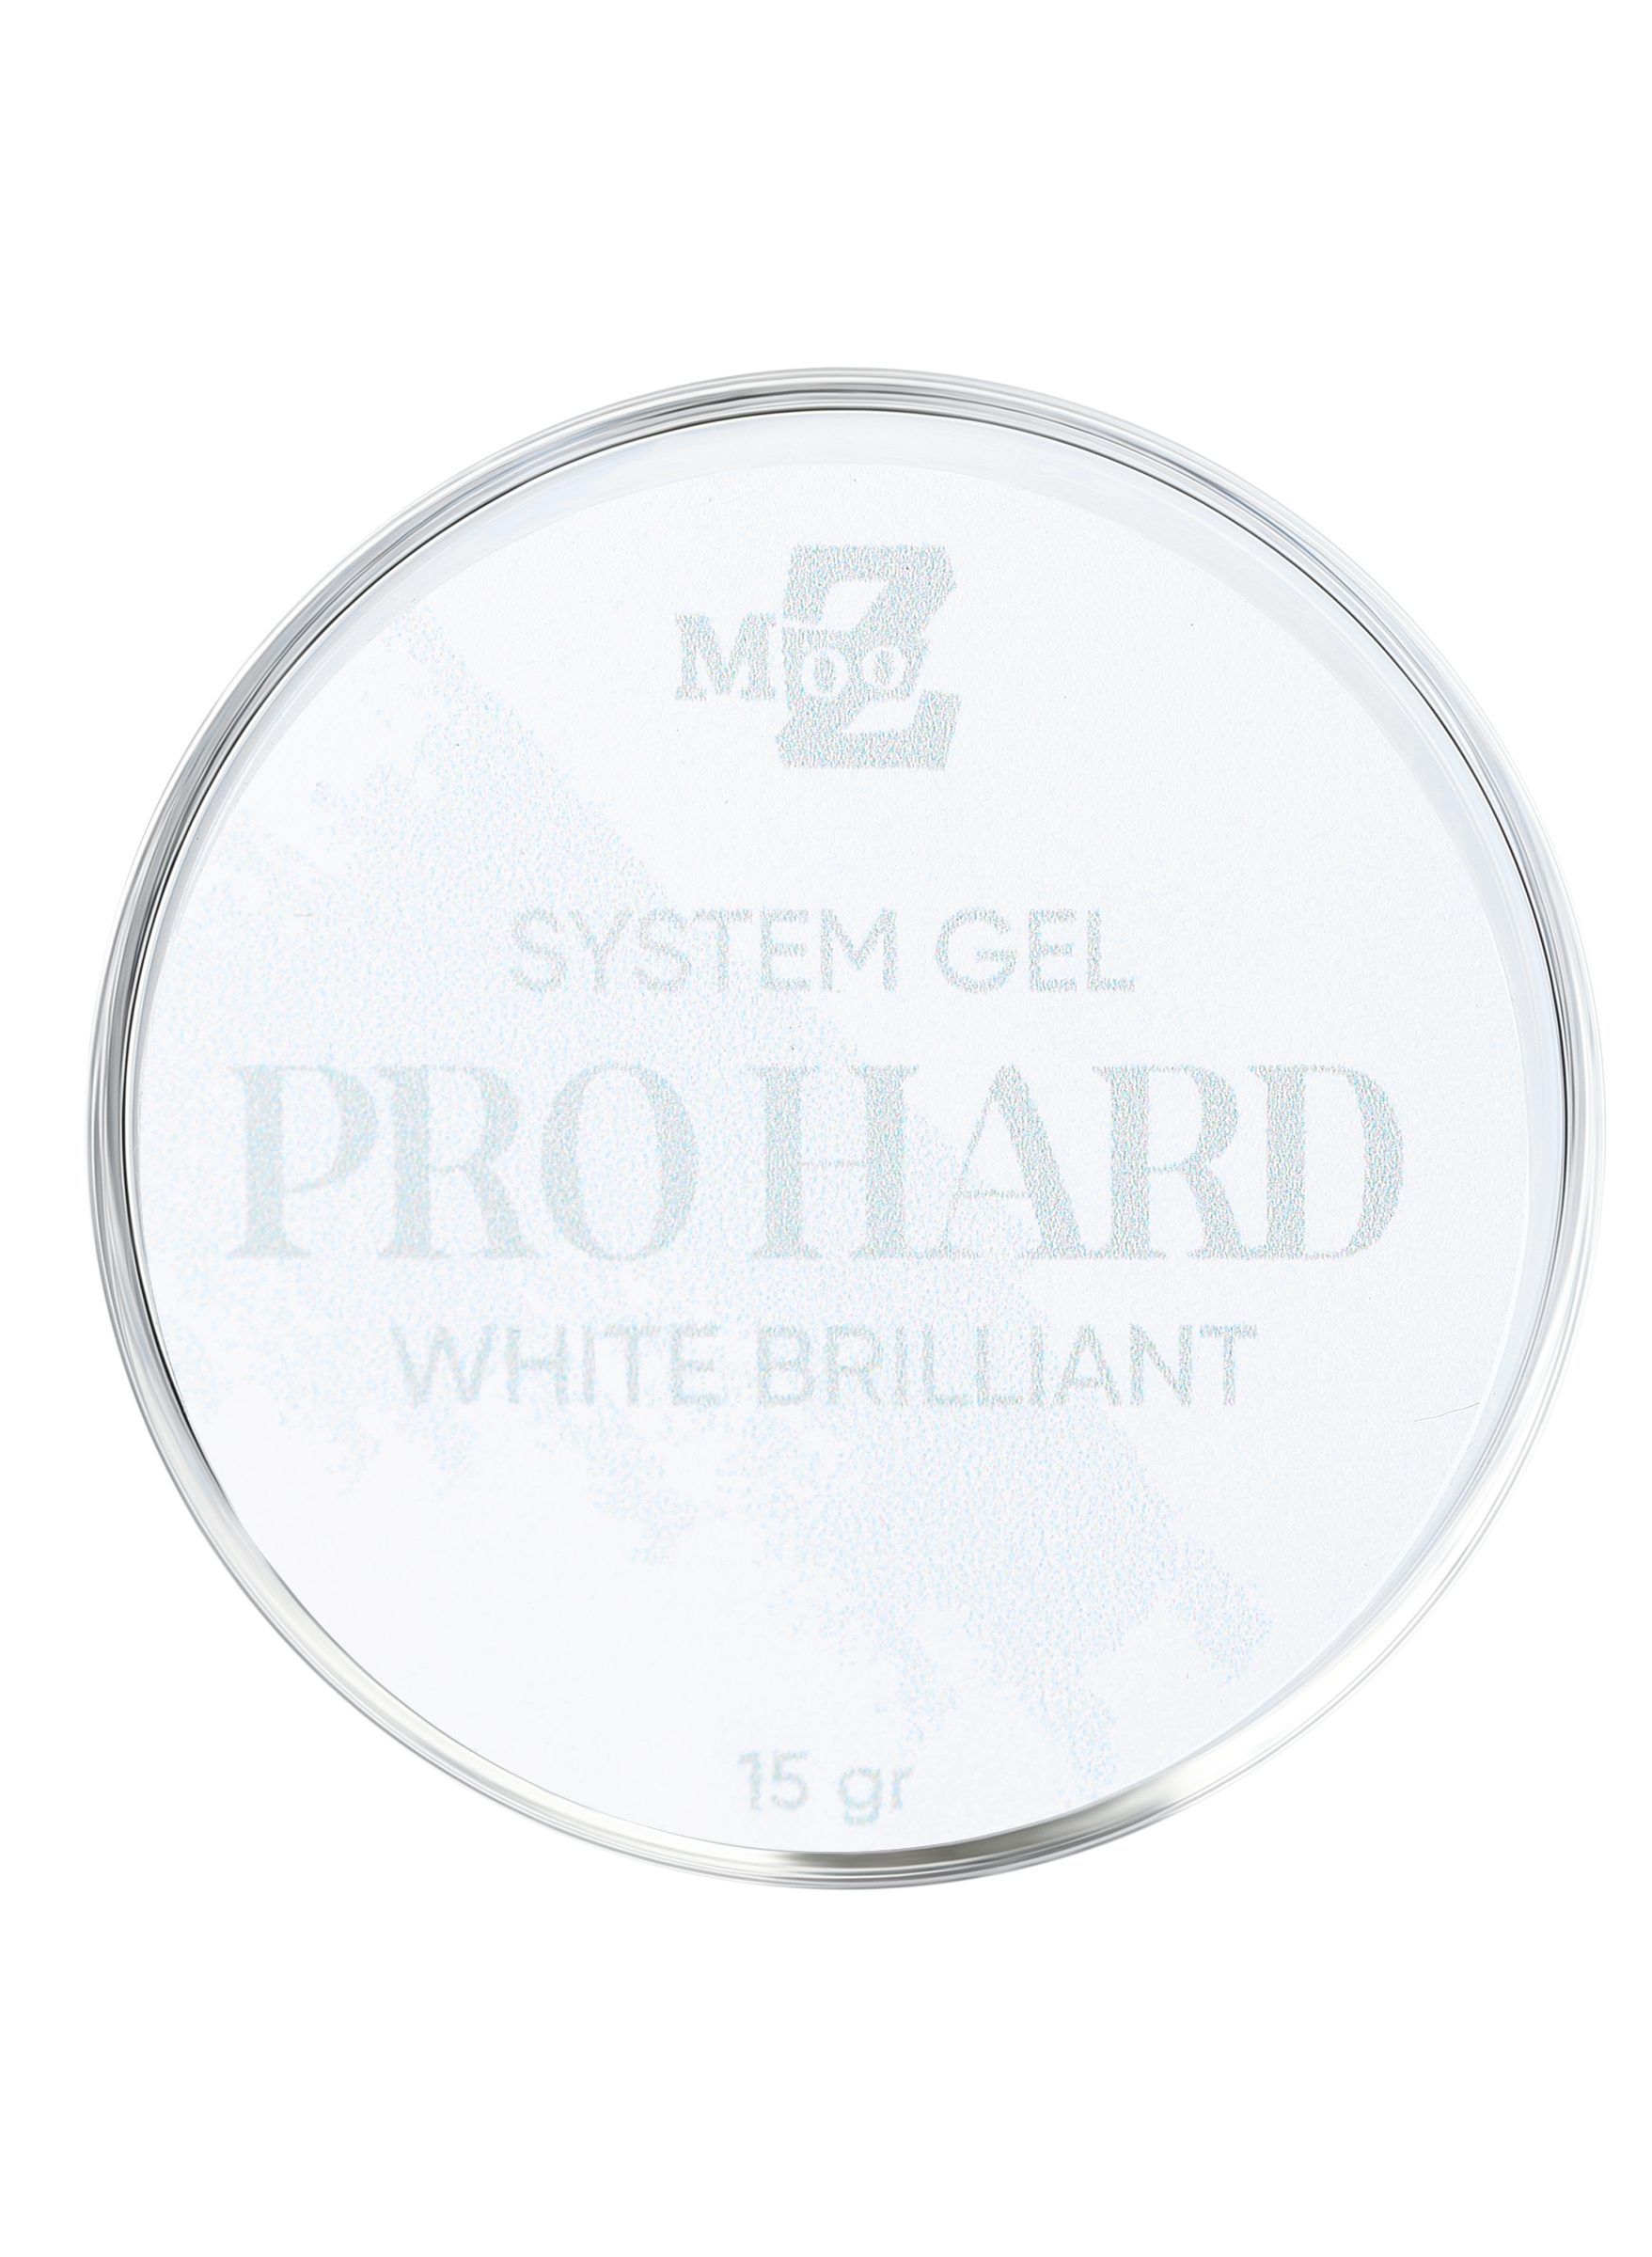 Гель для ногтей MOOZ Pro Gel White Brilliant наращивание моделирующий молочный 15 мл гель для душа молочный персик 100 мл